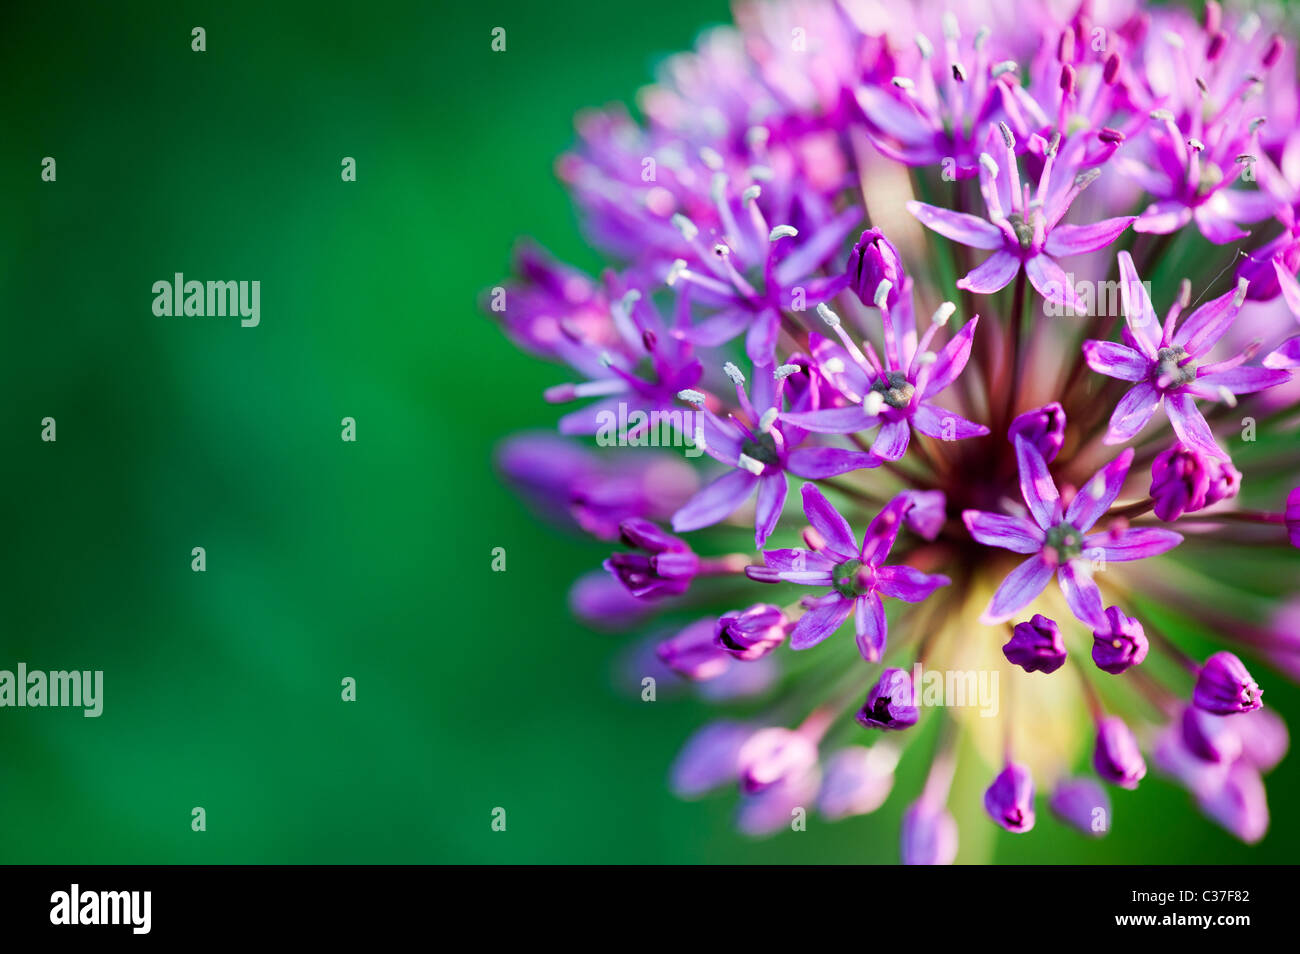 Allium hollandicum Sensation pourpre des fleurs. Selective focus Banque D'Images